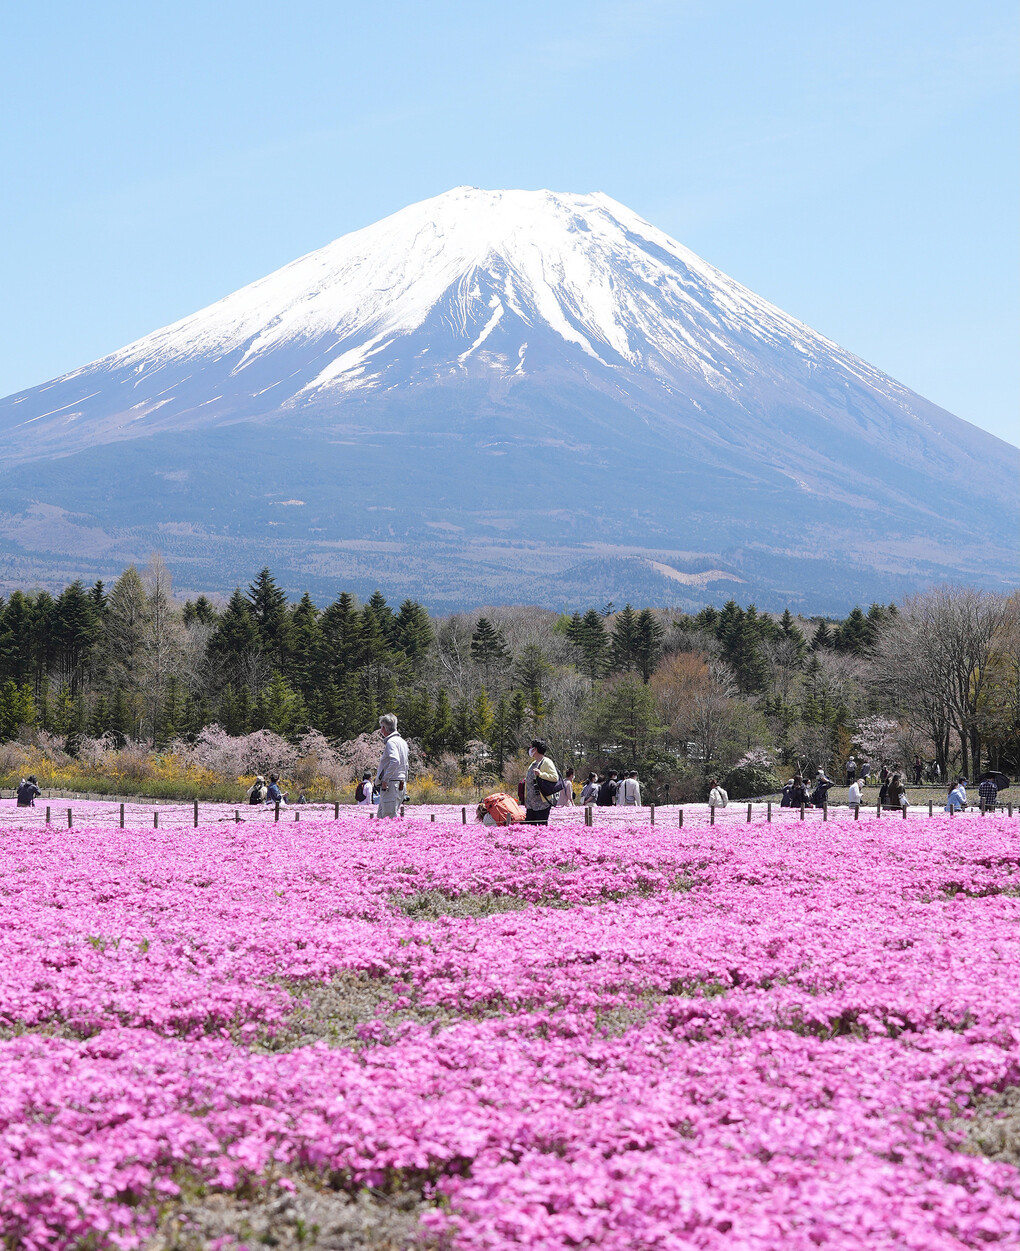 Loài hoa màu hồng mọc và nở thành thảm lớn này có tên là chi anh (shibazakura), thường rộ vào cuối xuân đầu hè, khoảng giữa tháng 4 đến cuối tháng 5 hàng năm. Thời gian nở kéo dài nhưng những ngày ngắm hoa đẹp nhất sẽ rơi vào 2 - 3 tuần đầu tháng 5. Năm nay hoa chi anh nở sớm hơn, ước tính có tới 800.000 cây khoe sắc. Ảnh: VCG